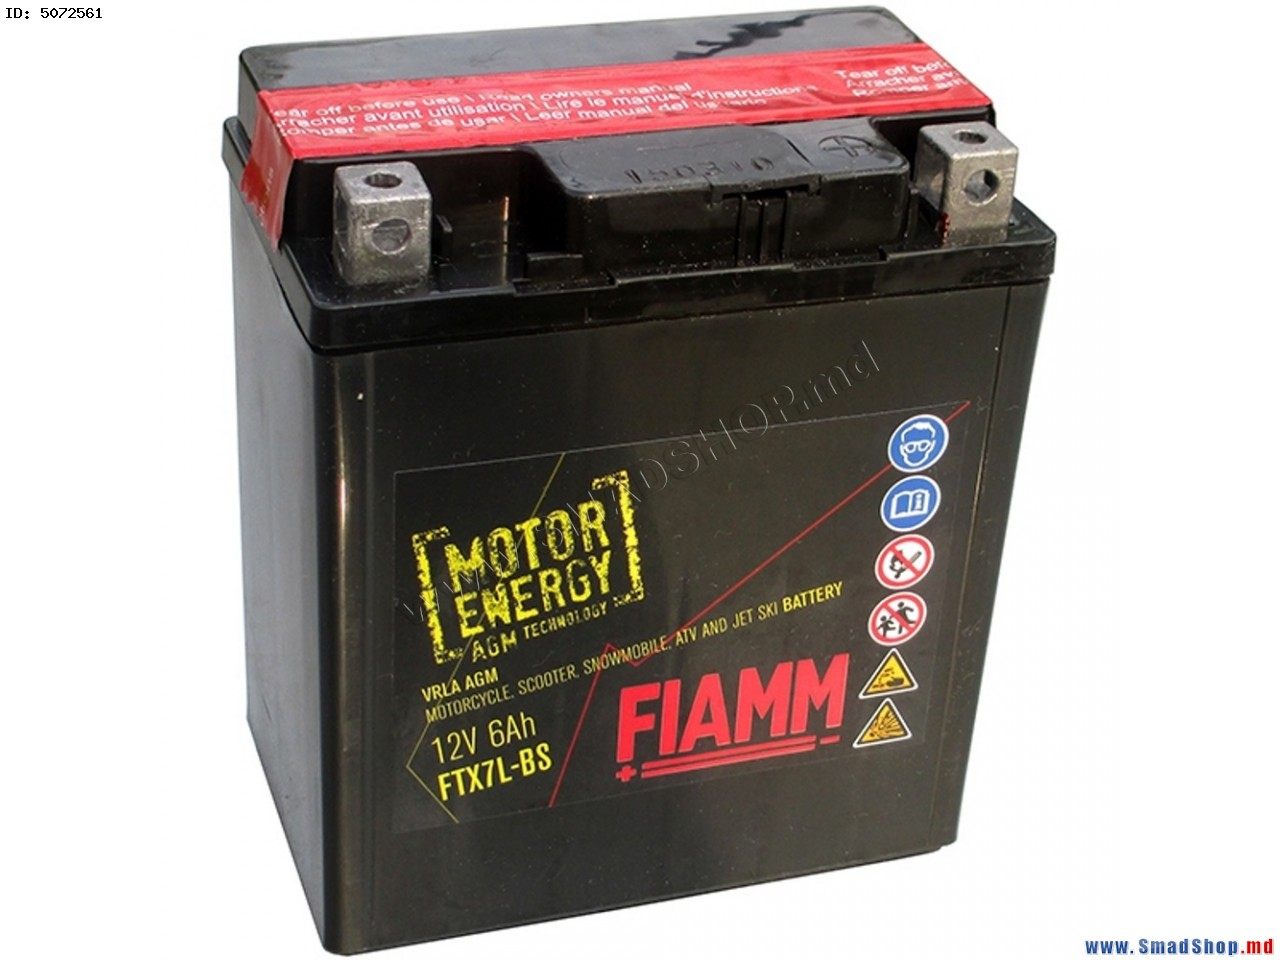 Battery JMT YTX16-BS-1 gel 12V-14Ah